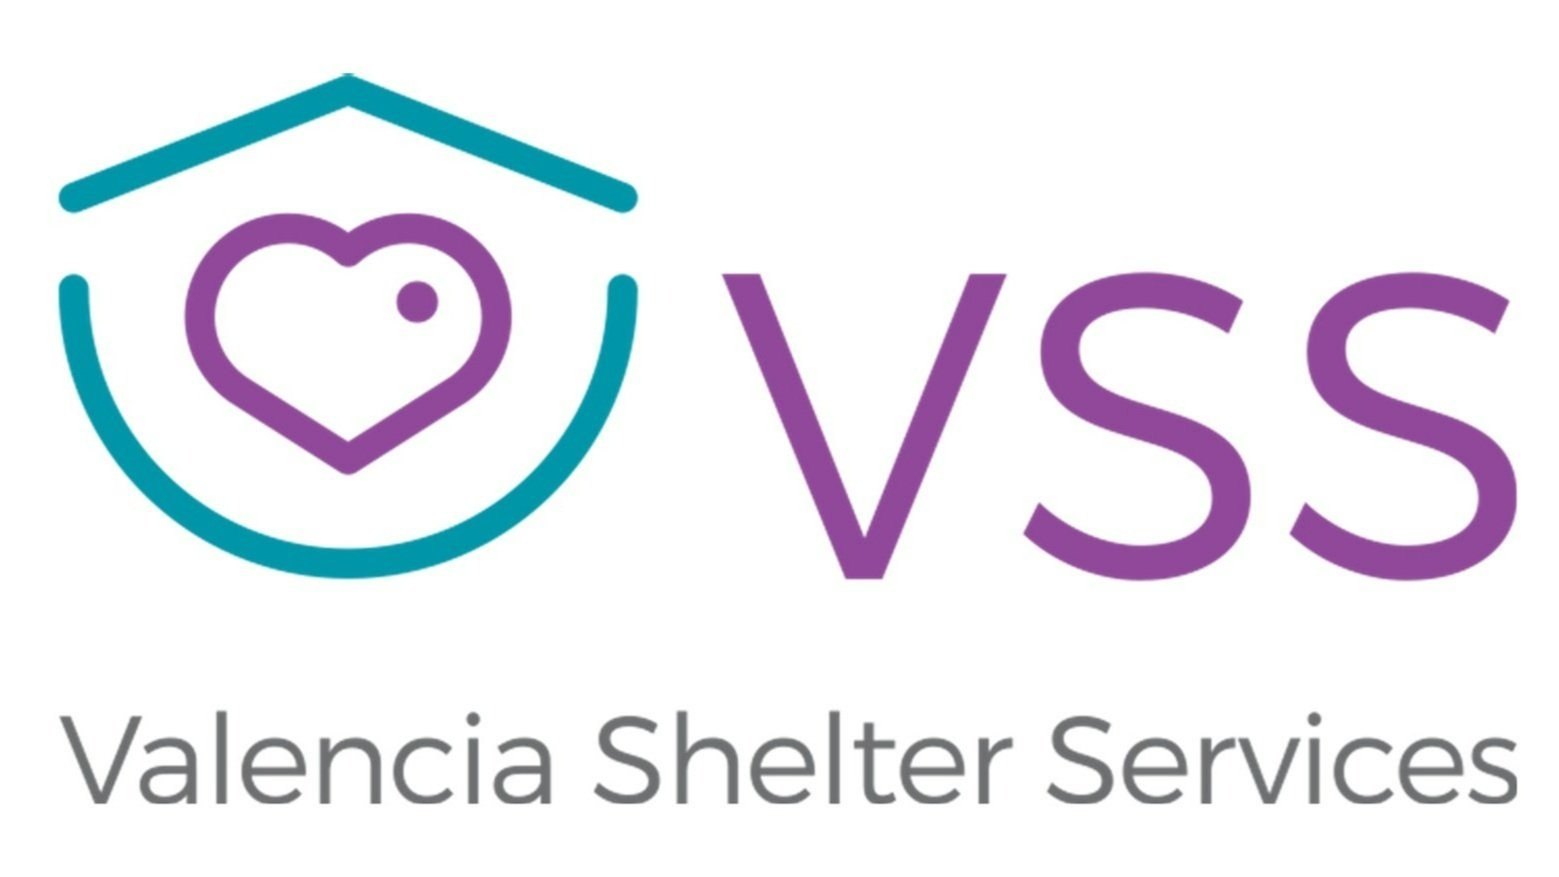 Valencia Shelter Services